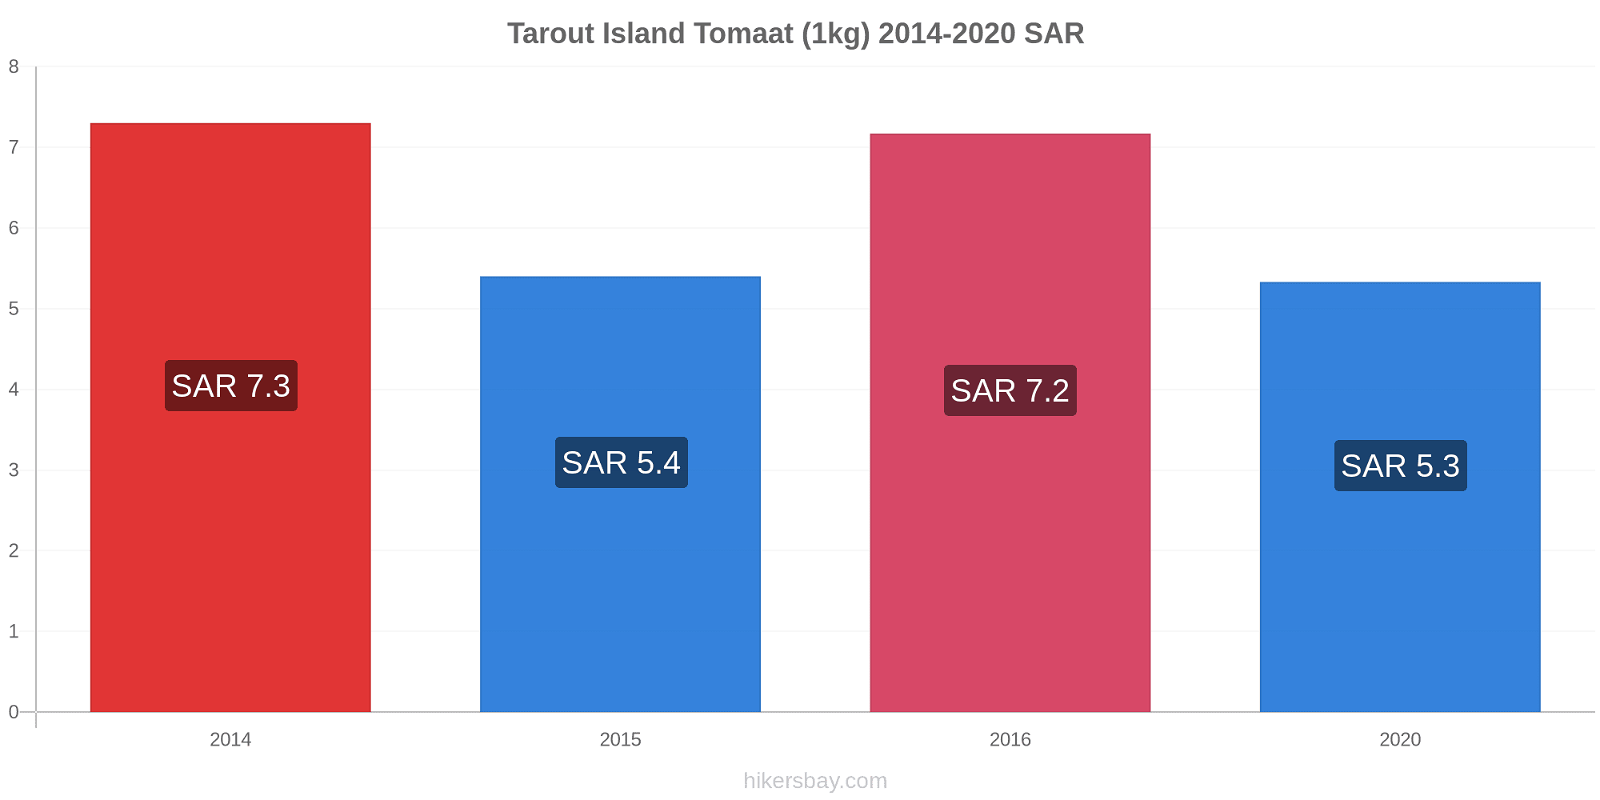 Tarout Island prijswijzigingen Tomaat (1kg) hikersbay.com